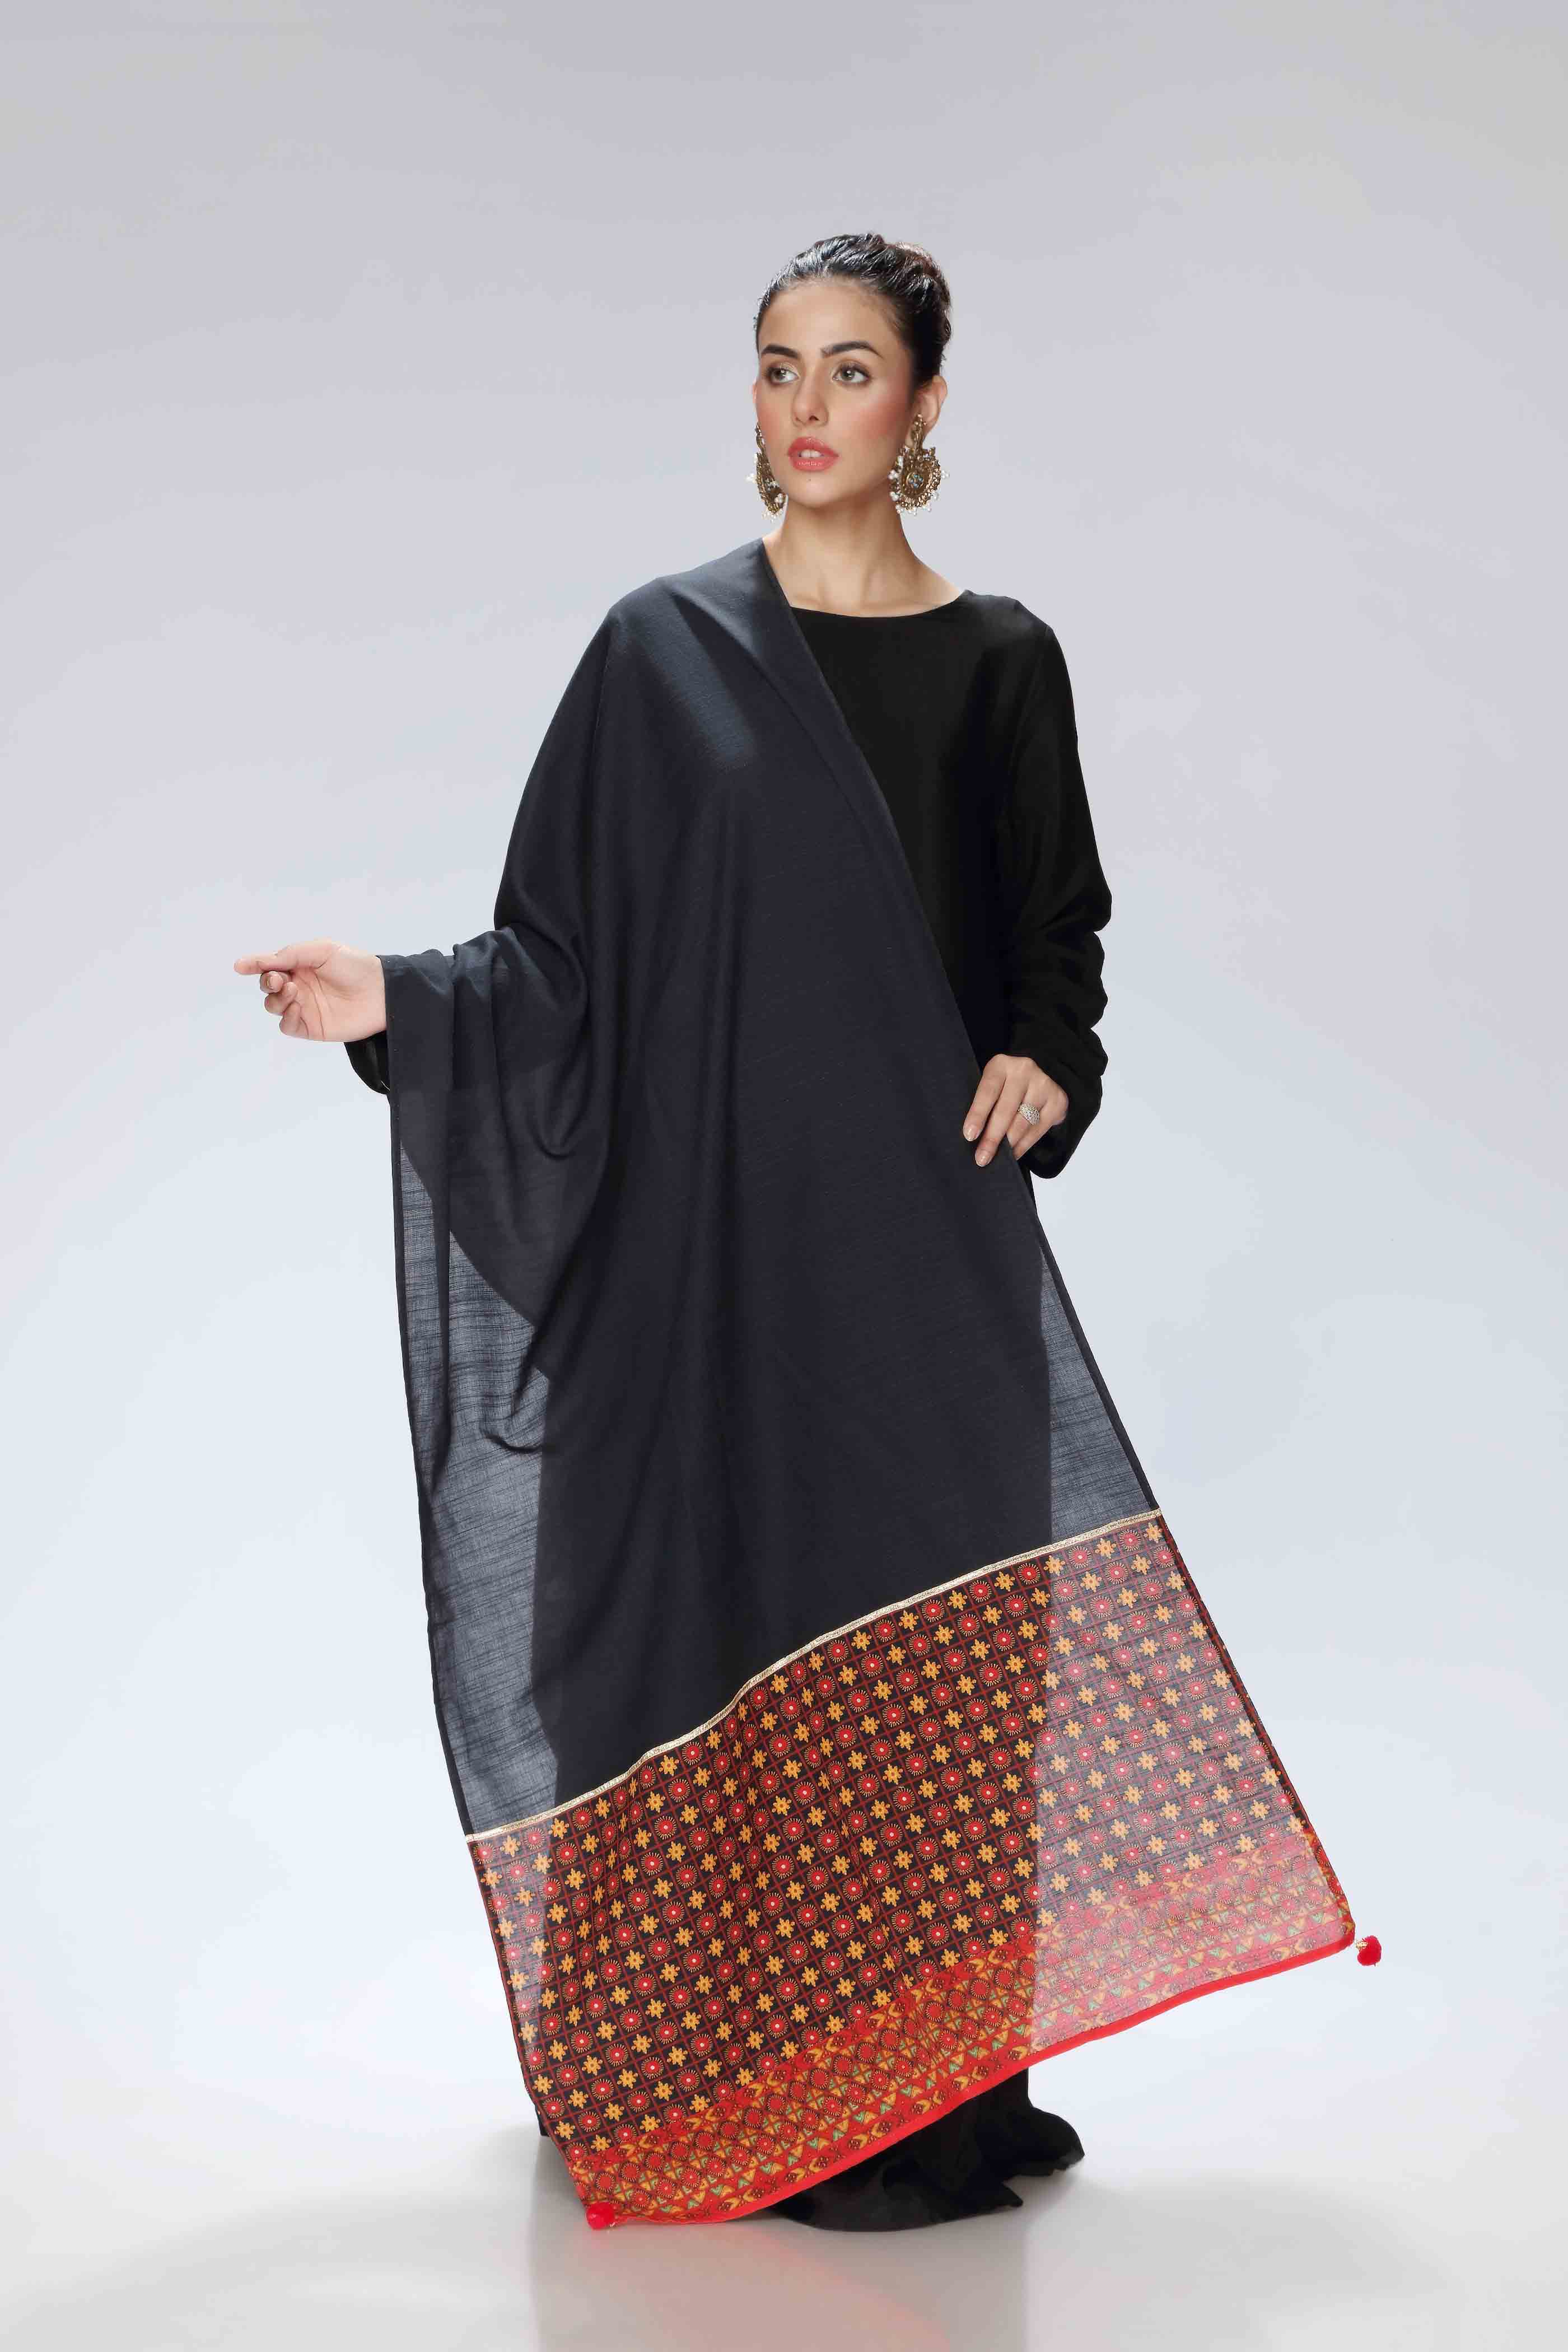 Impression Block in Multi coloured Printed Slub Khaddar fabric